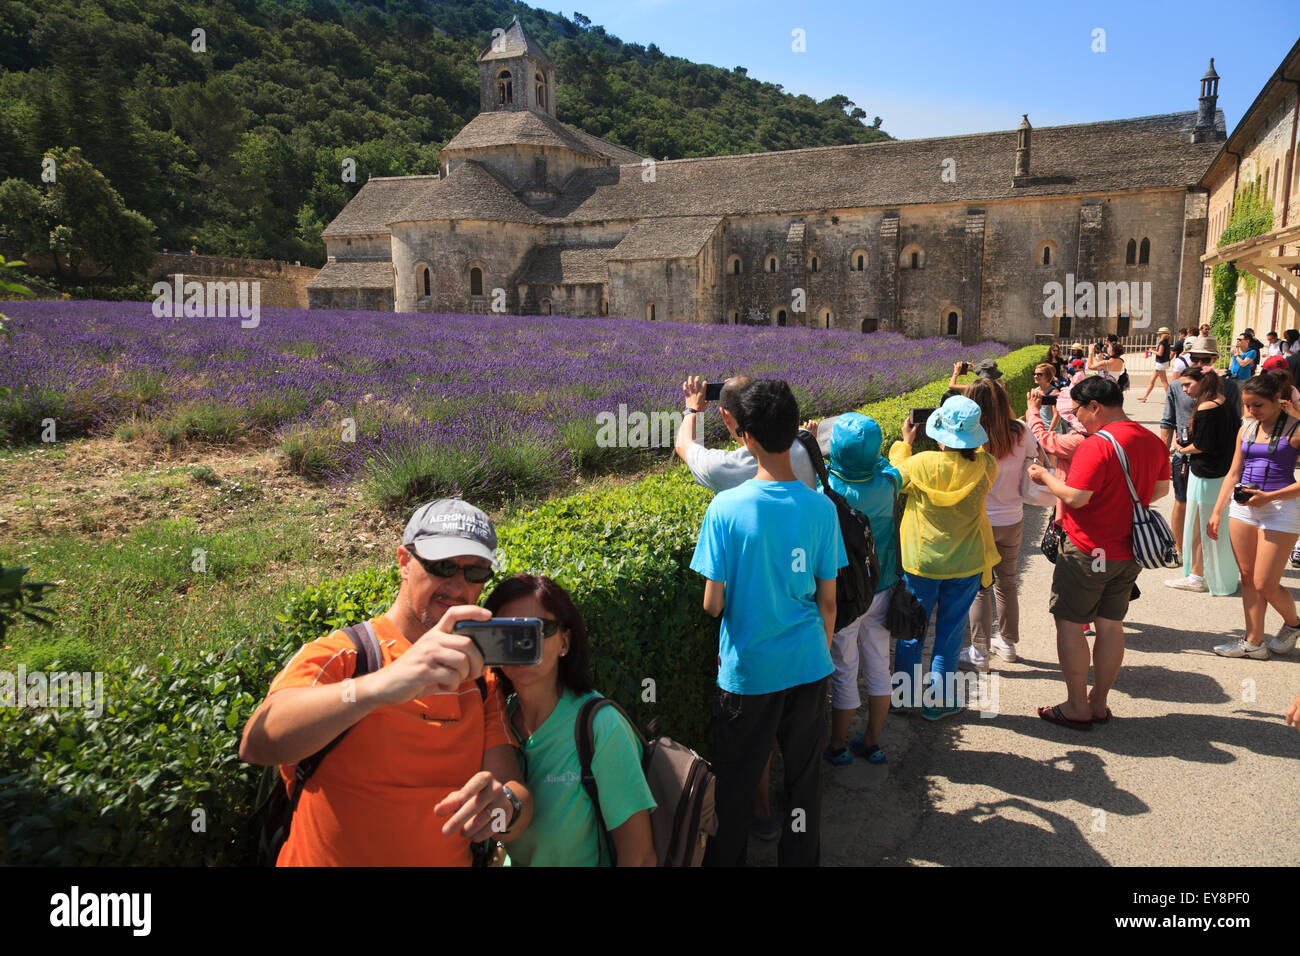 Les touristes prendre des photos de l'Abbaye Notre-Dame de Sénanque Provence France avec la lavande en pleine floraison Banque D'Images